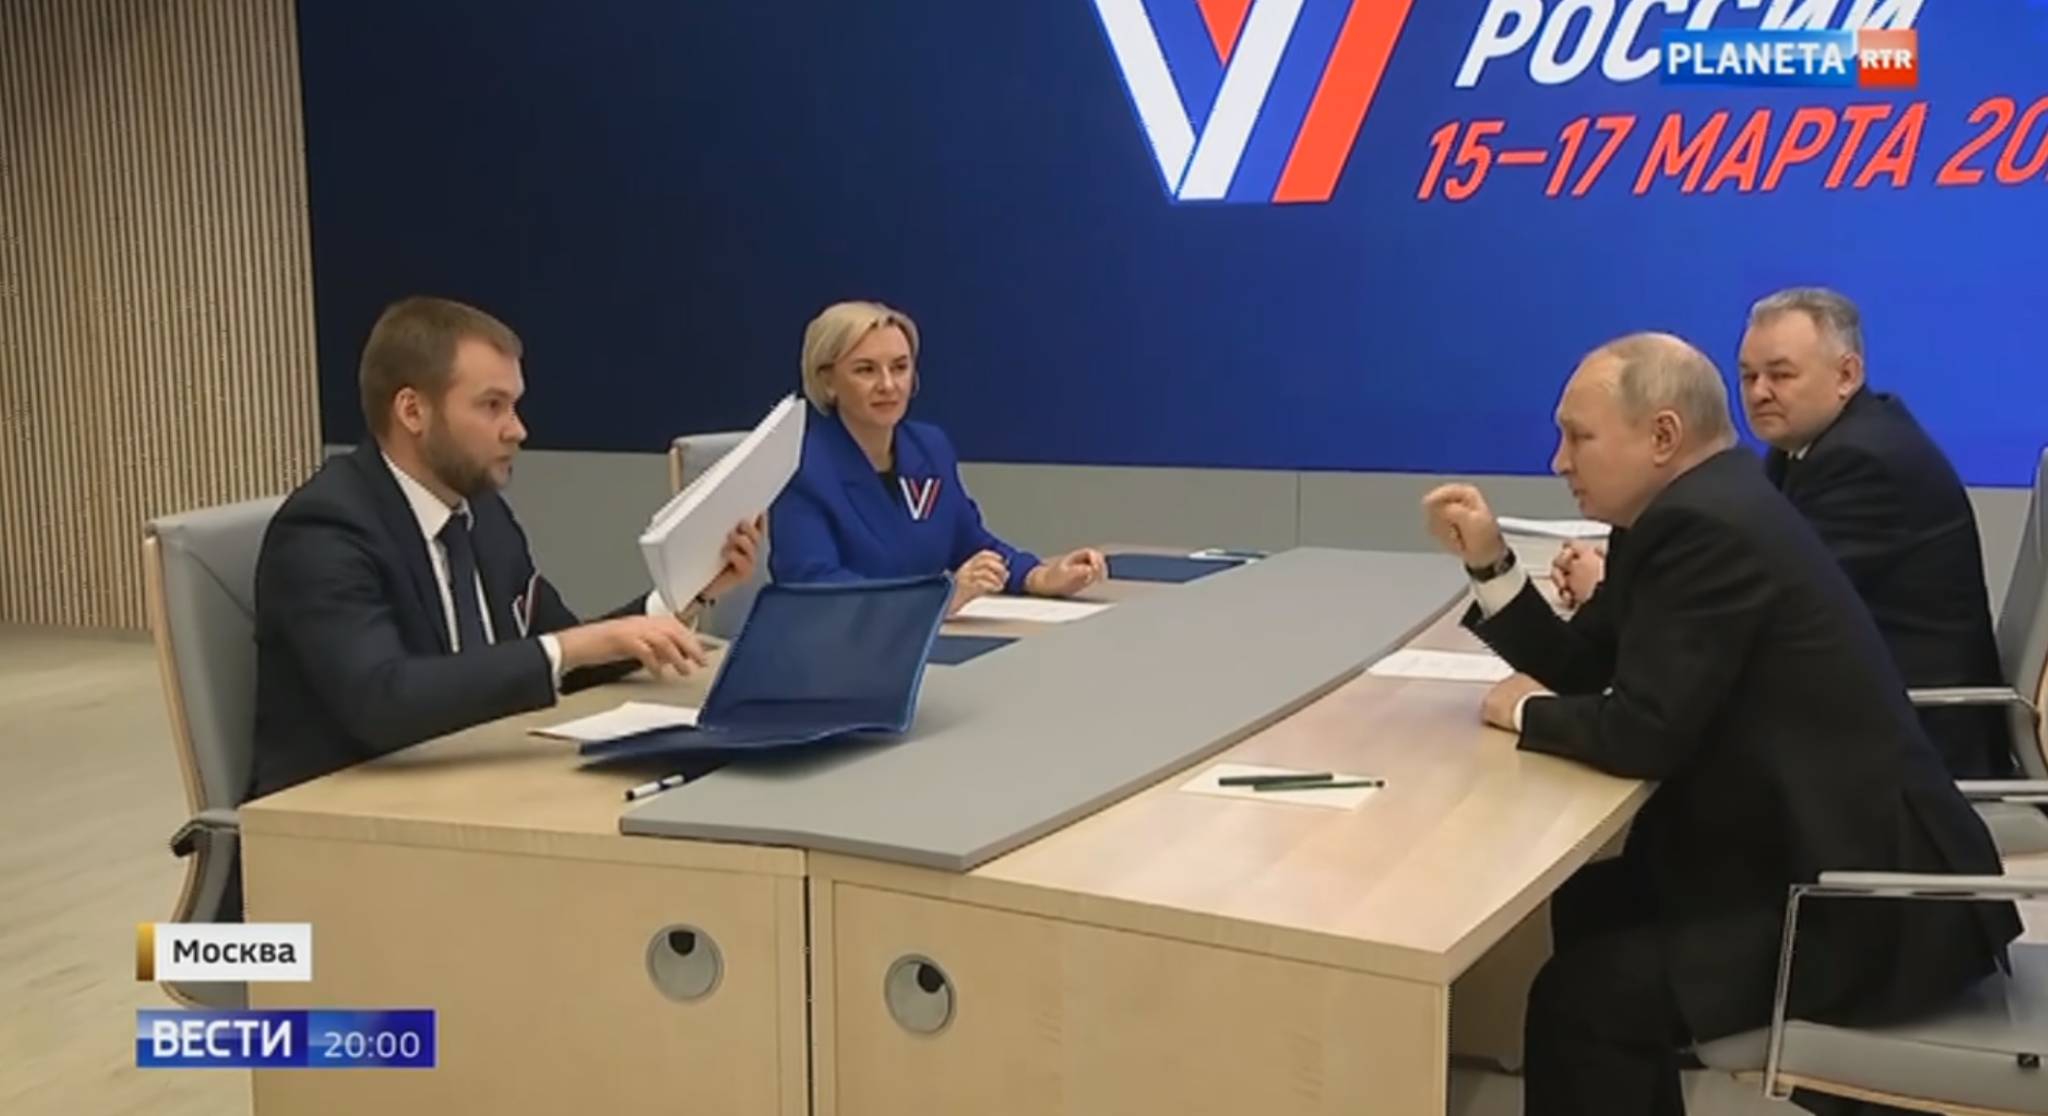 Putin siedzi przy biurku przed dwojgiem urzędników